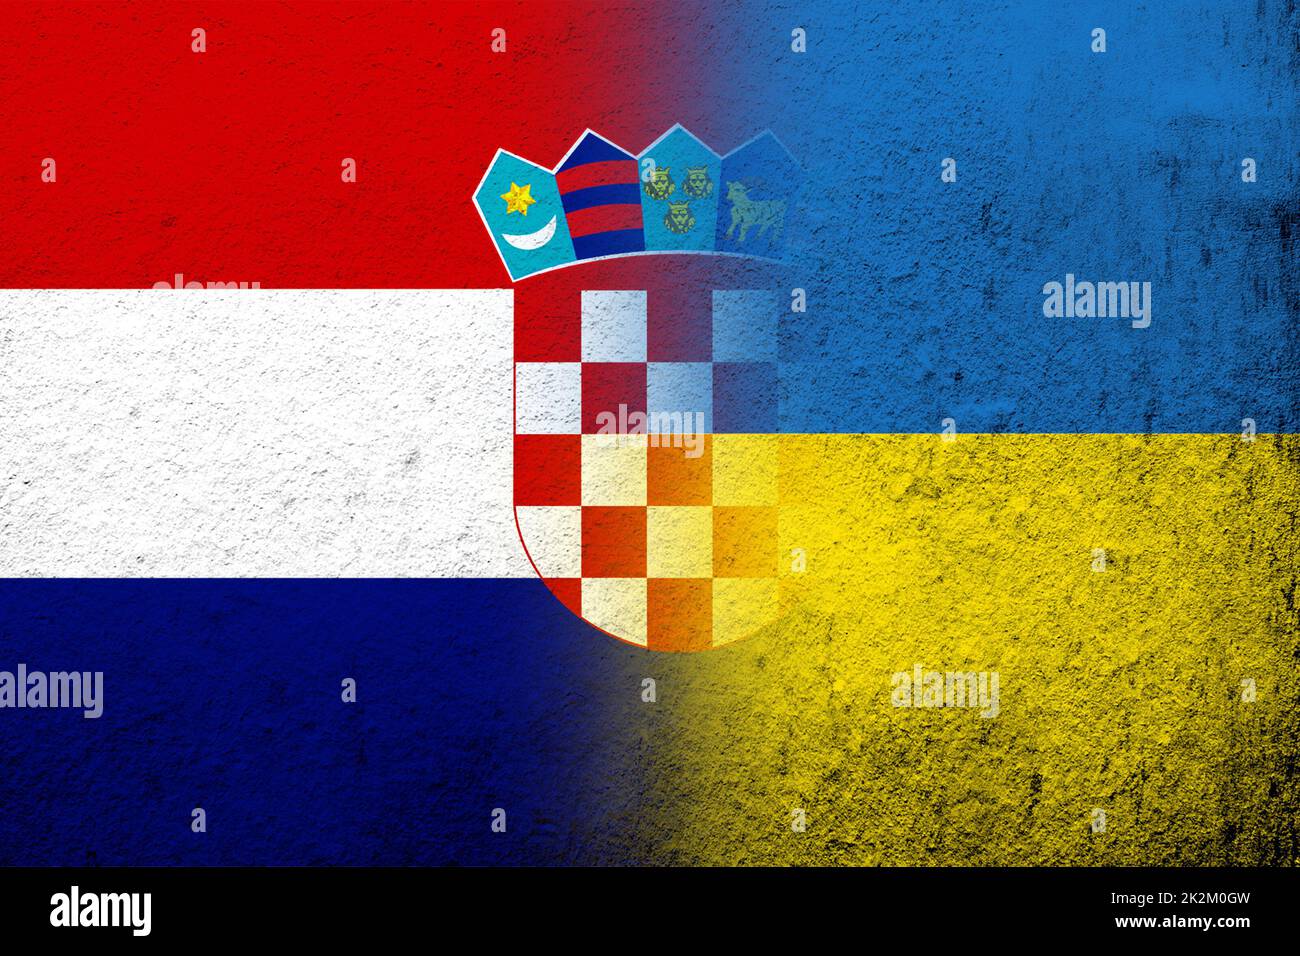 Republic of Croatia National flag with National flag of Ukraine. Grunge background Stock Photo